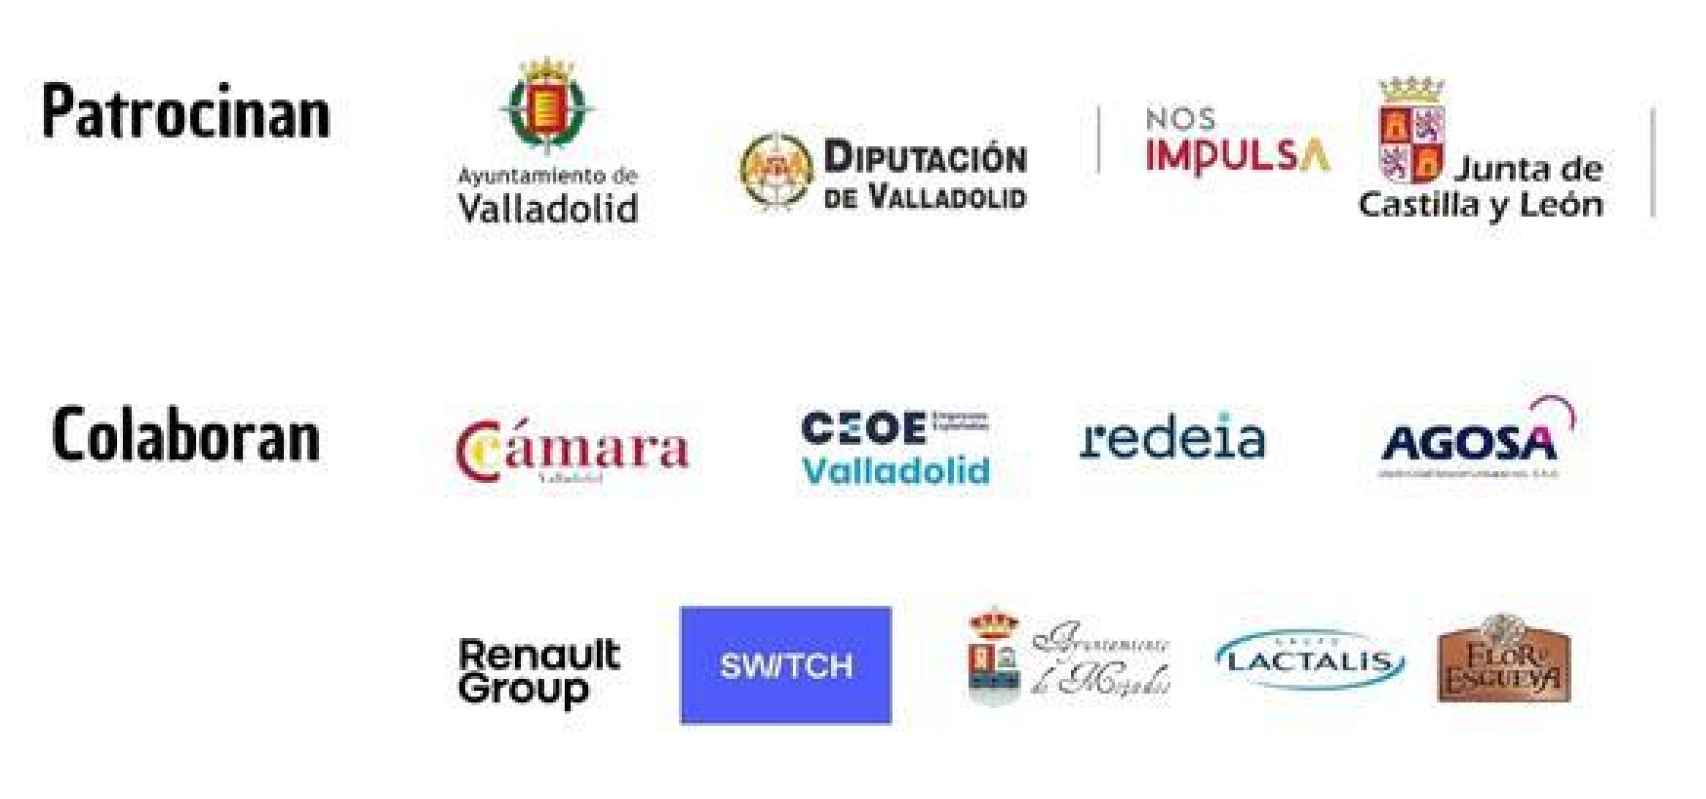 Patrocinadores Valladolid Impulsa